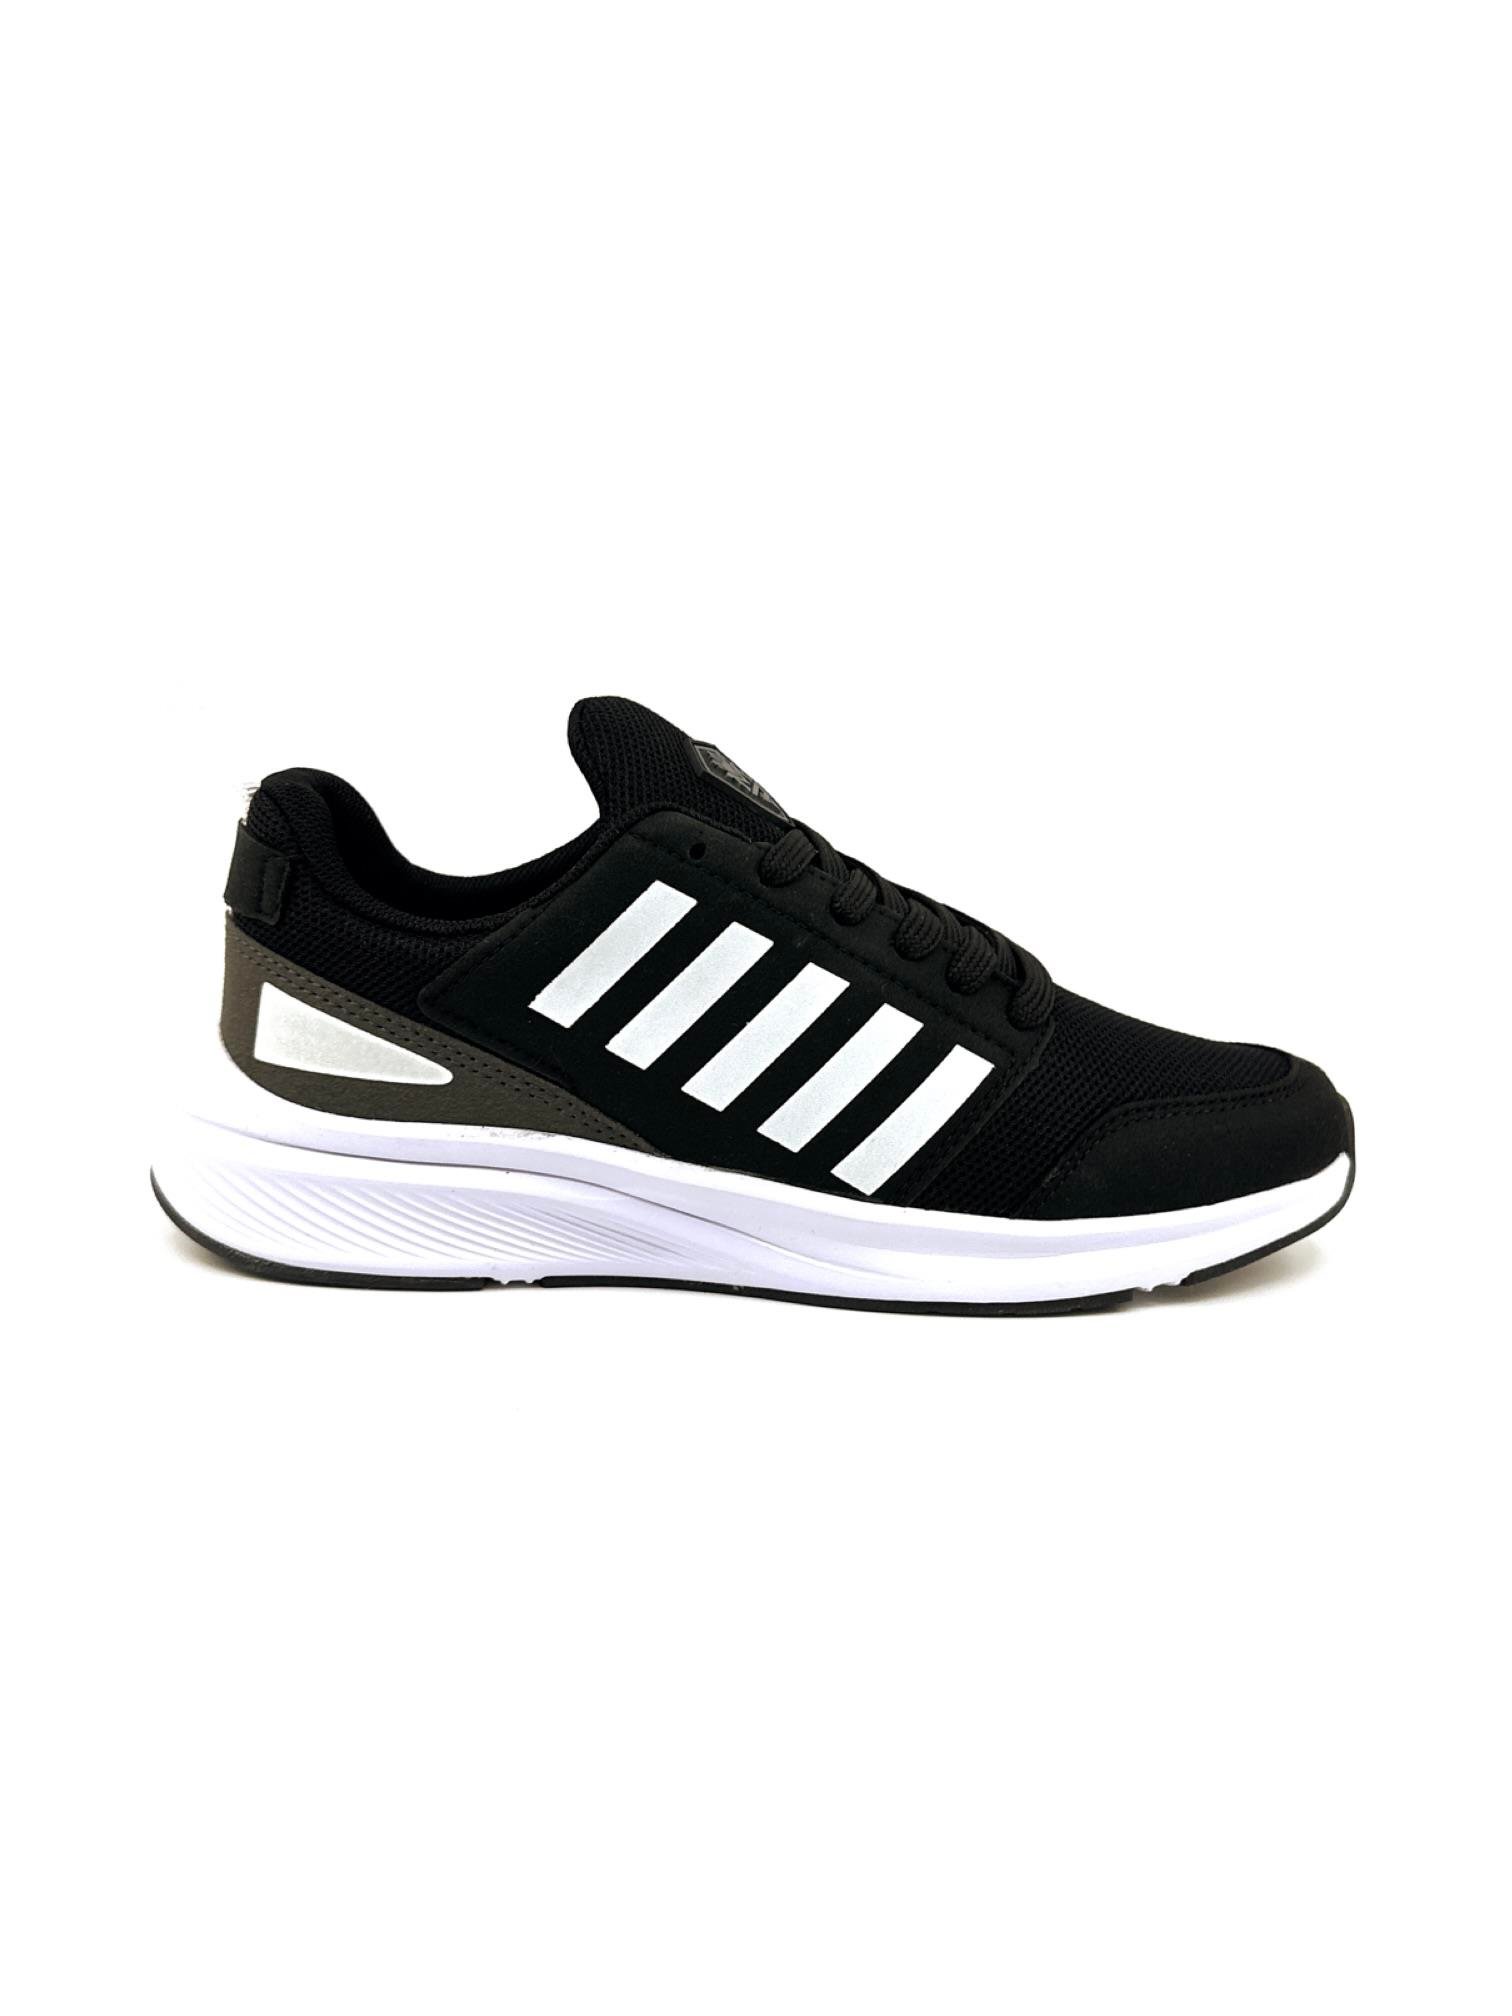 europaspor.com'dan M.P 1046 model tam ortopedik erkek spor ayakkabısı! Yaz  aylarında hafif tabanıyla rahatlıkla kullanabilirsin. Şimdi incele ve hemen  sipariş ver!